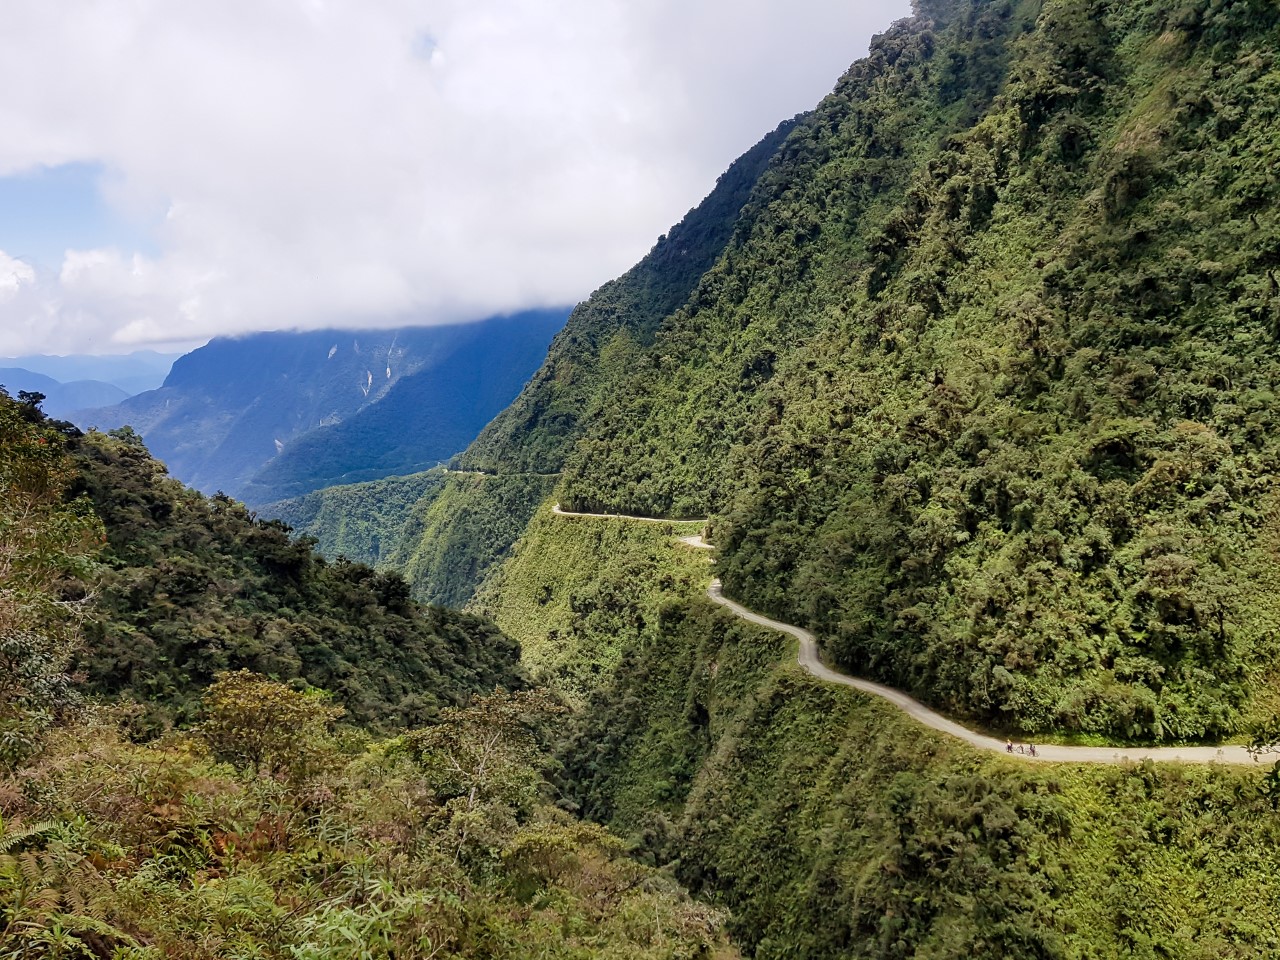 <p><strong>Пътят на смъртта, Боливия</strong></p>

<p>Пътят от Ла Пас до Короико, Боливия, е коварен: Той се вие несигурно през амазонската дъждовна гора на повече от 15 000 метра височина. Като се има предвид тази ужасяваща височина, широката 3,6 м&nbsp;единична лента, липсата на предпазни огради и ограничената видимост поради дъжд и мъгла, е лесно да се разбере защо този 50-километров участък от магистралата си е спечелил прозвището &quot;Пътят на смъртта&quot;. Макар че там годишно са загивали от 200 до 300 души, сега той е по-скоро&nbsp;дестинация за планински колоездачи.</p>